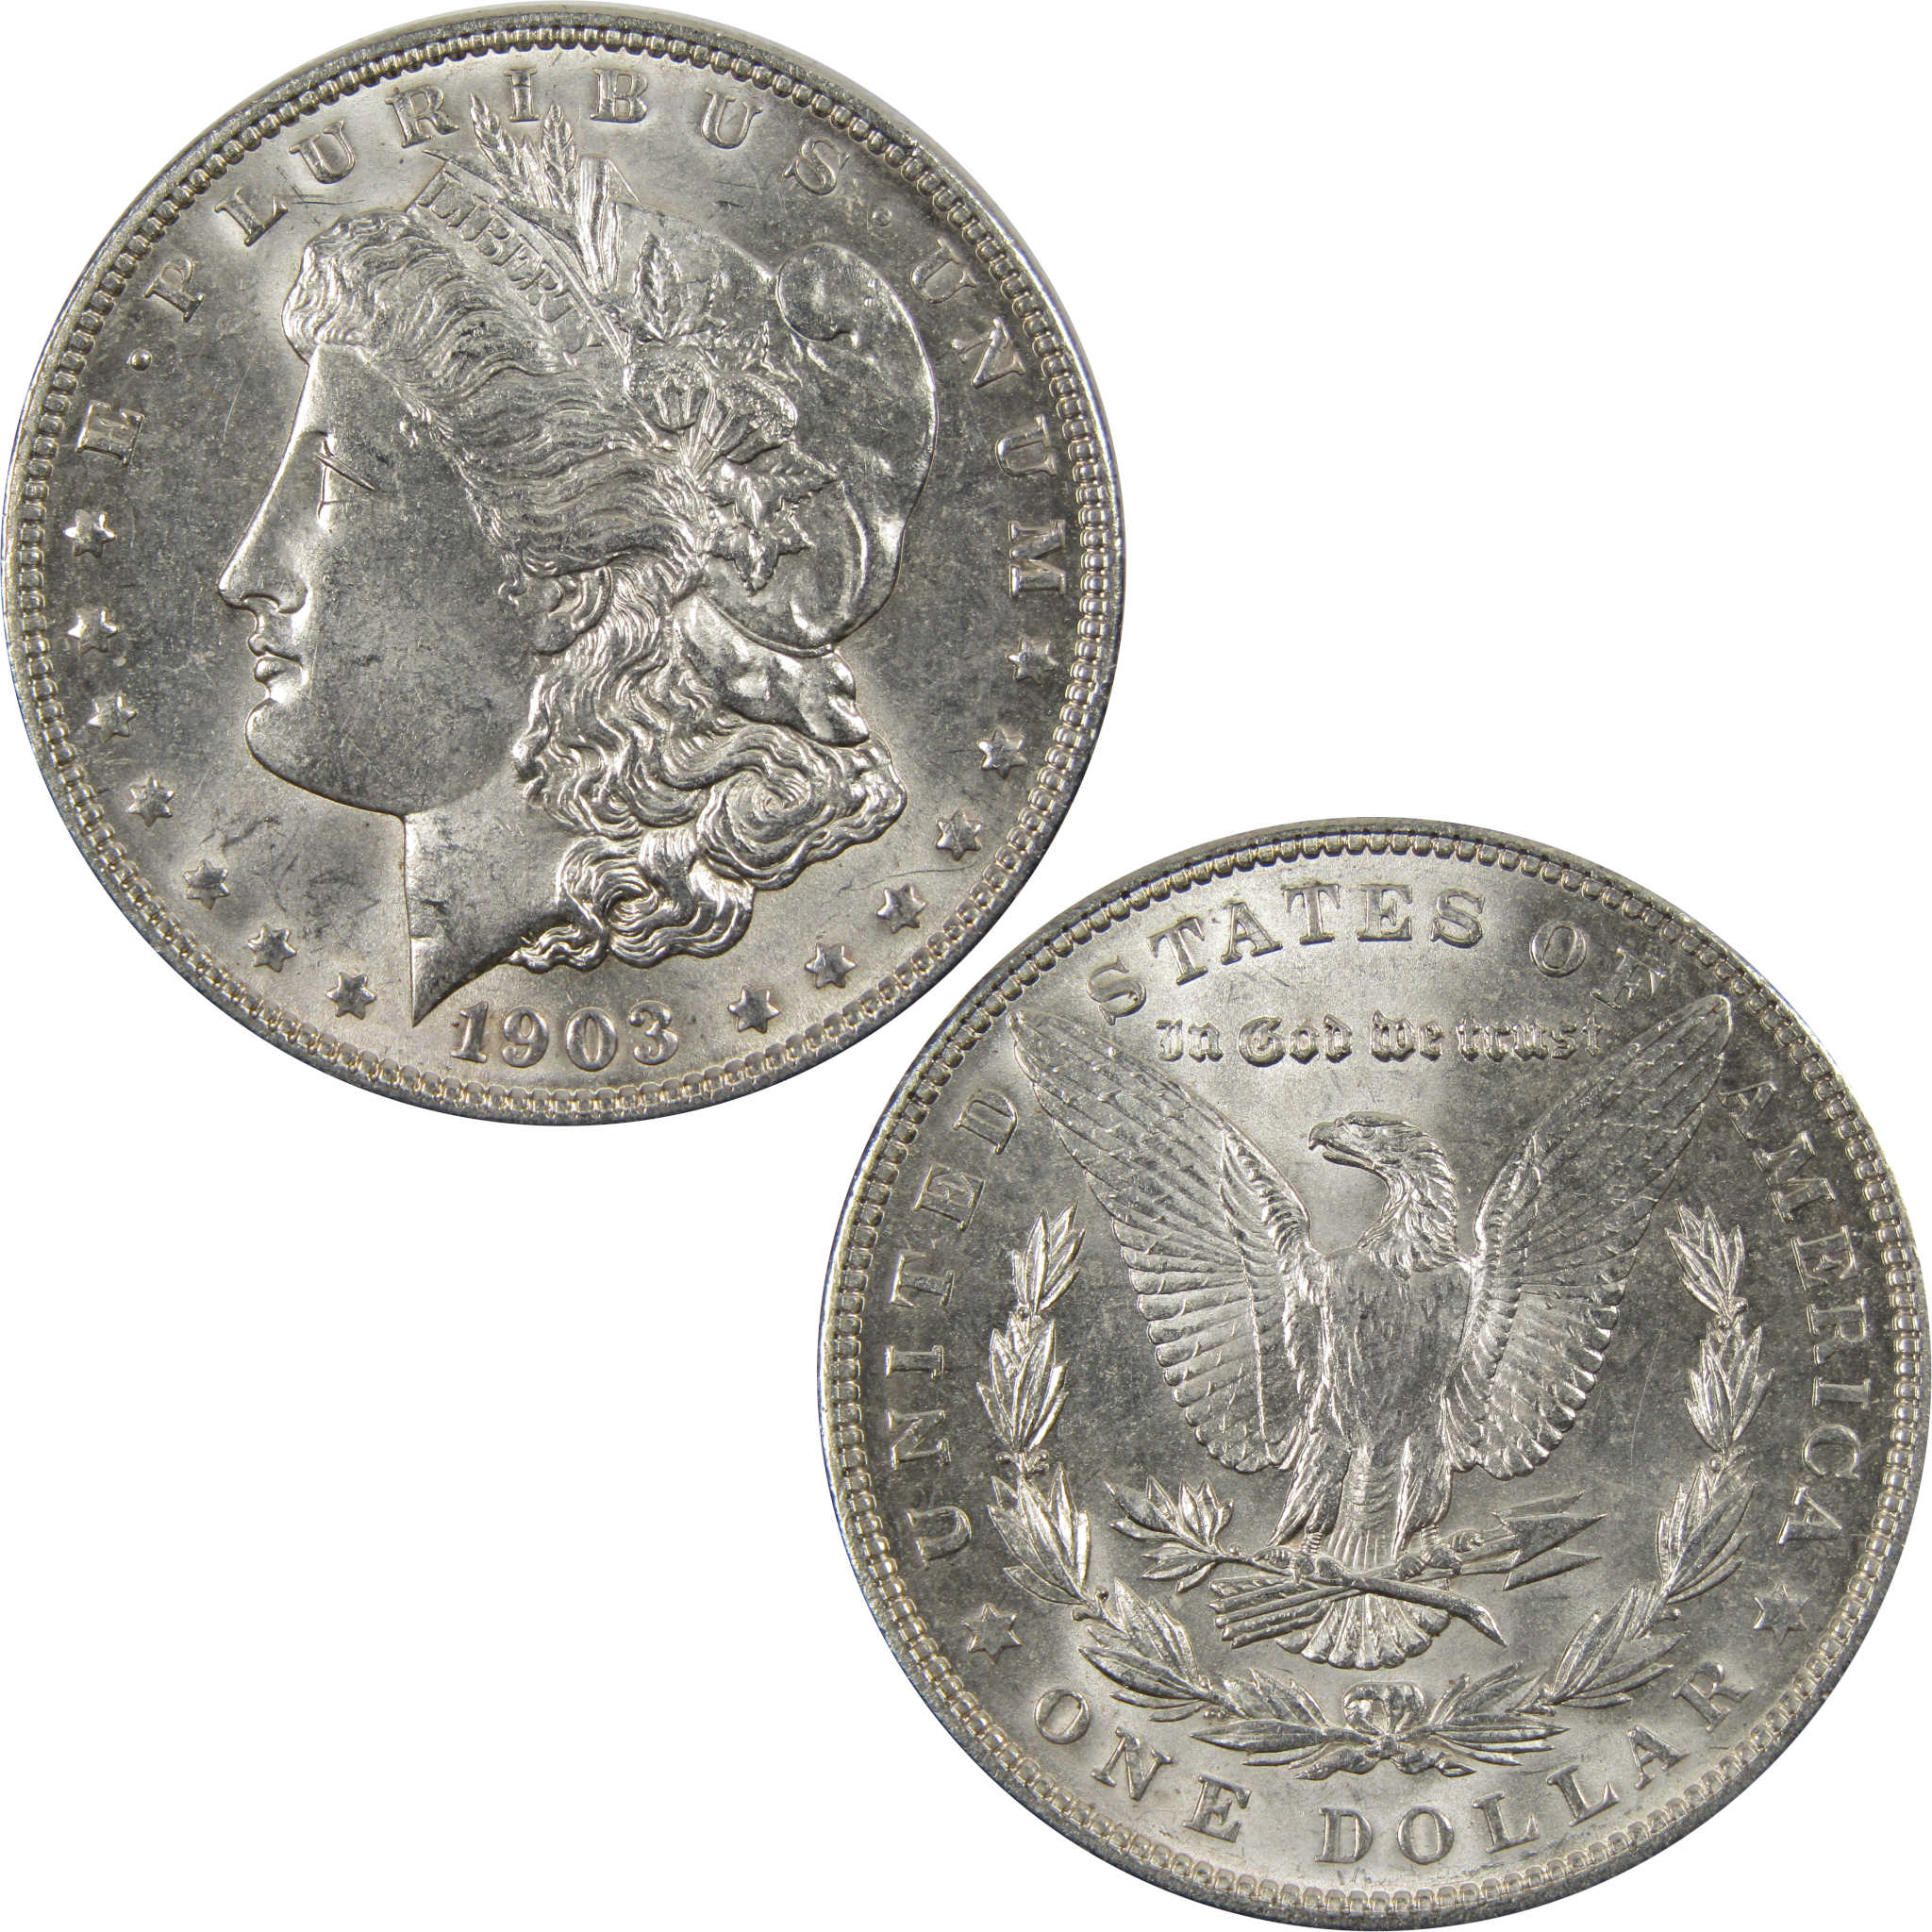 1903 Morgan Dollar BU Uncirculated 90% Silver $1 Coin SKU:I7306 - Morgan coin - Morgan silver dollar - Morgan silver dollar for sale - Profile Coins &amp; Collectibles